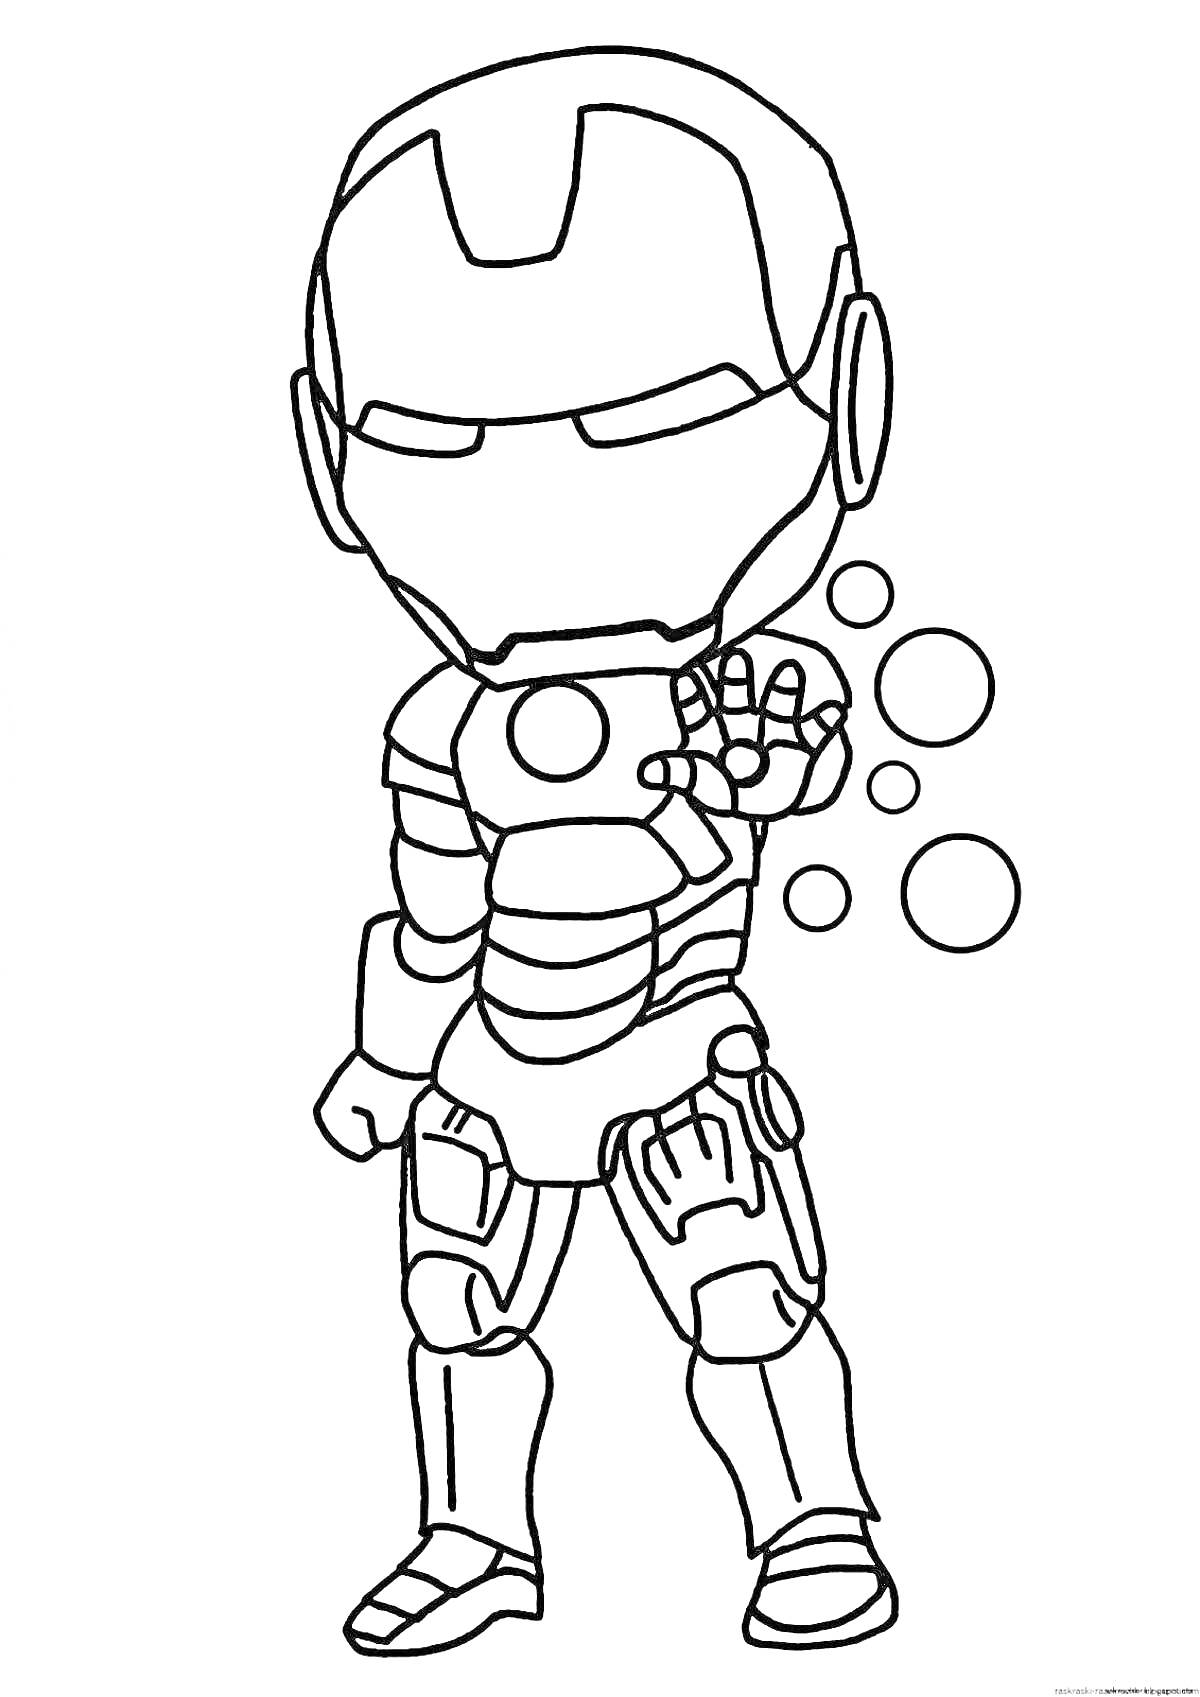 Раскраска Робот-супергерой с мяьзями и протянутой рукой